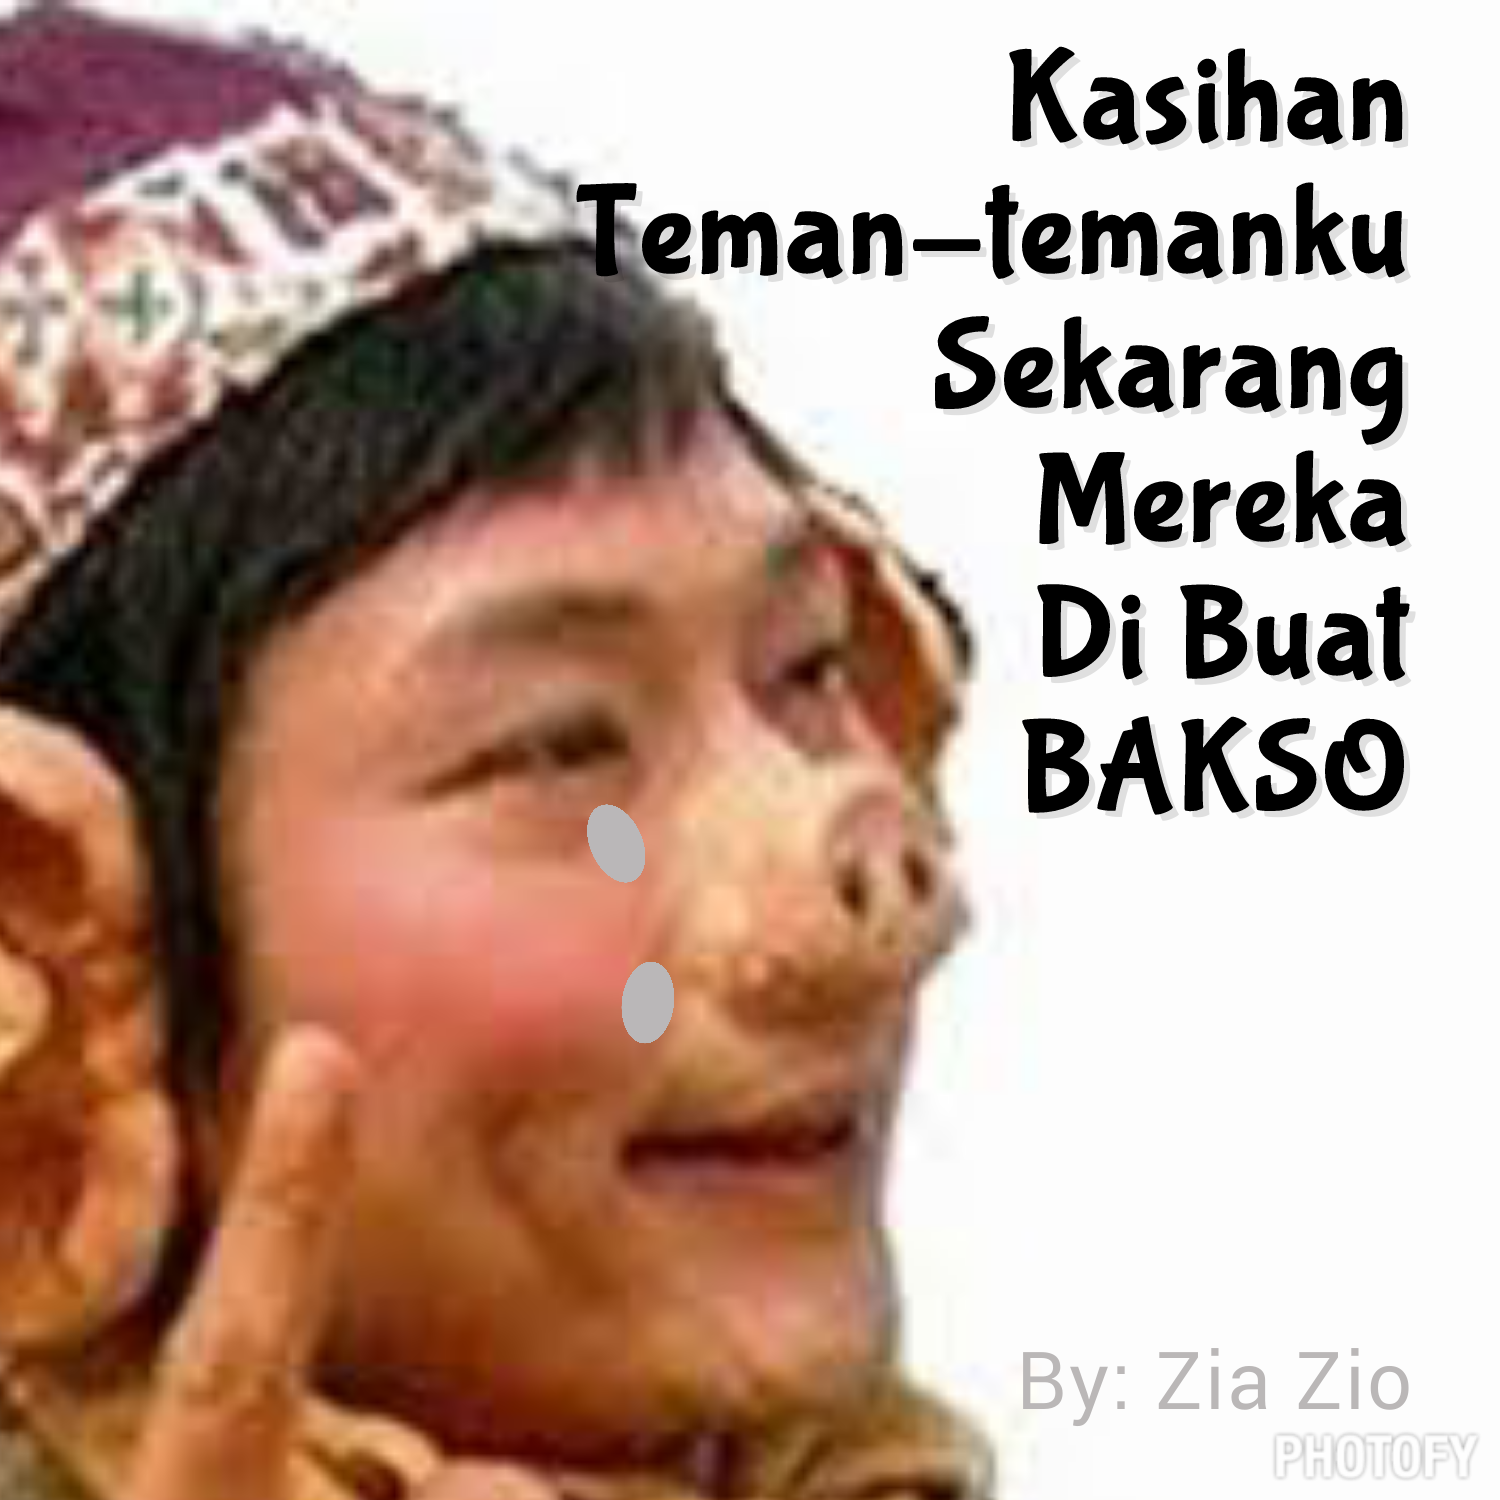 Wallpaper Lucu Gokil Terbaru 2015 Part 3 RUMAHGOKILcom